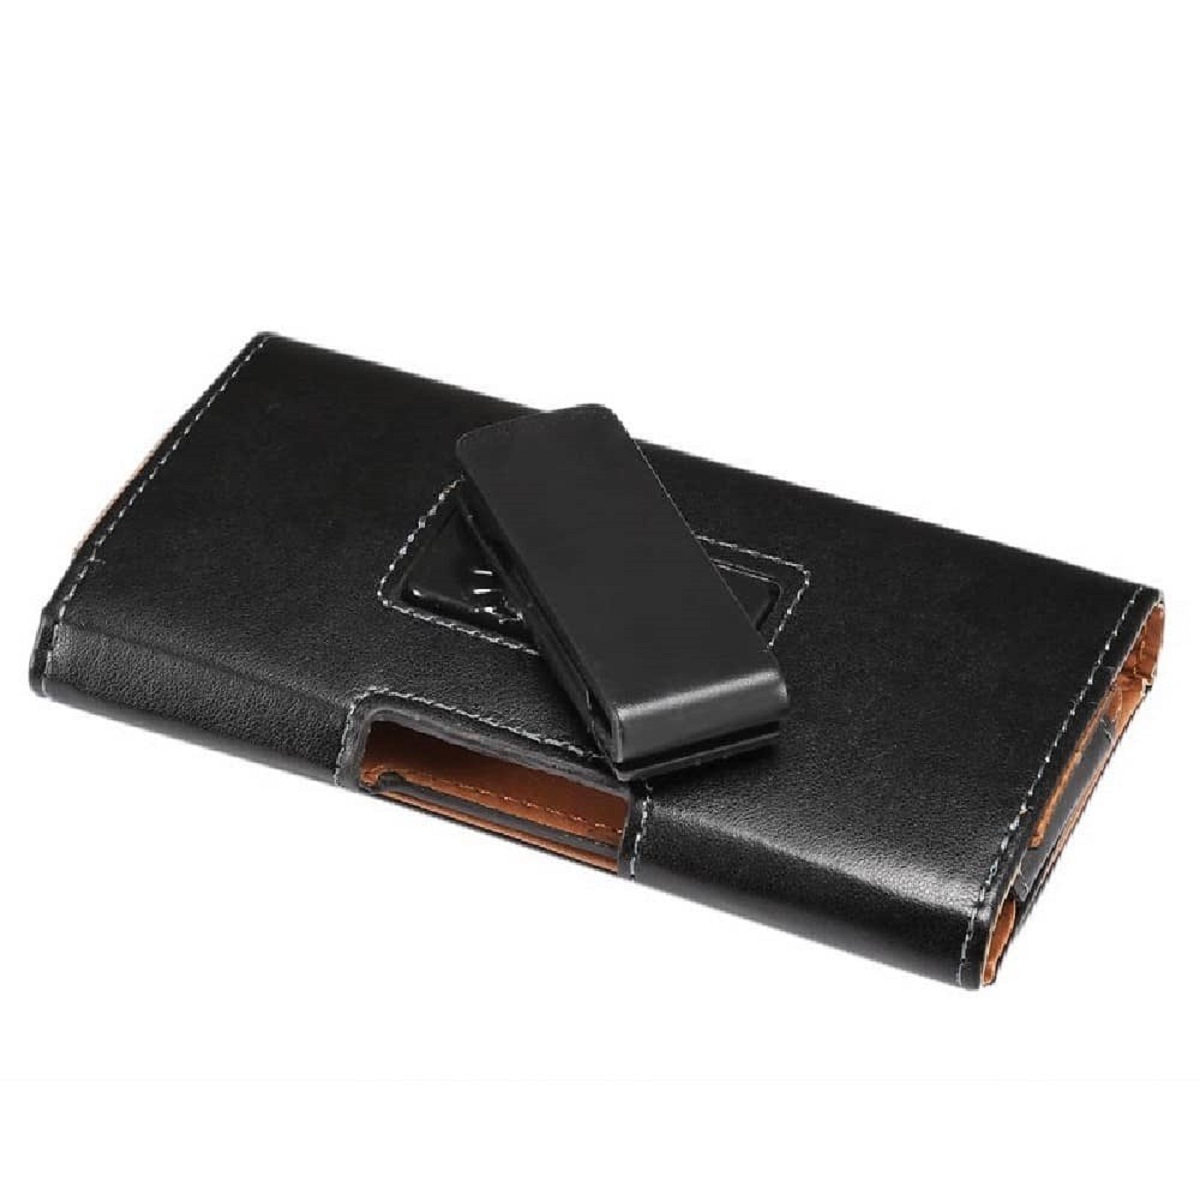 縮圖 1  - for YU Yunique 2 Executive Holster Leather Case Belt Clip Rotary 360 Magnetic...